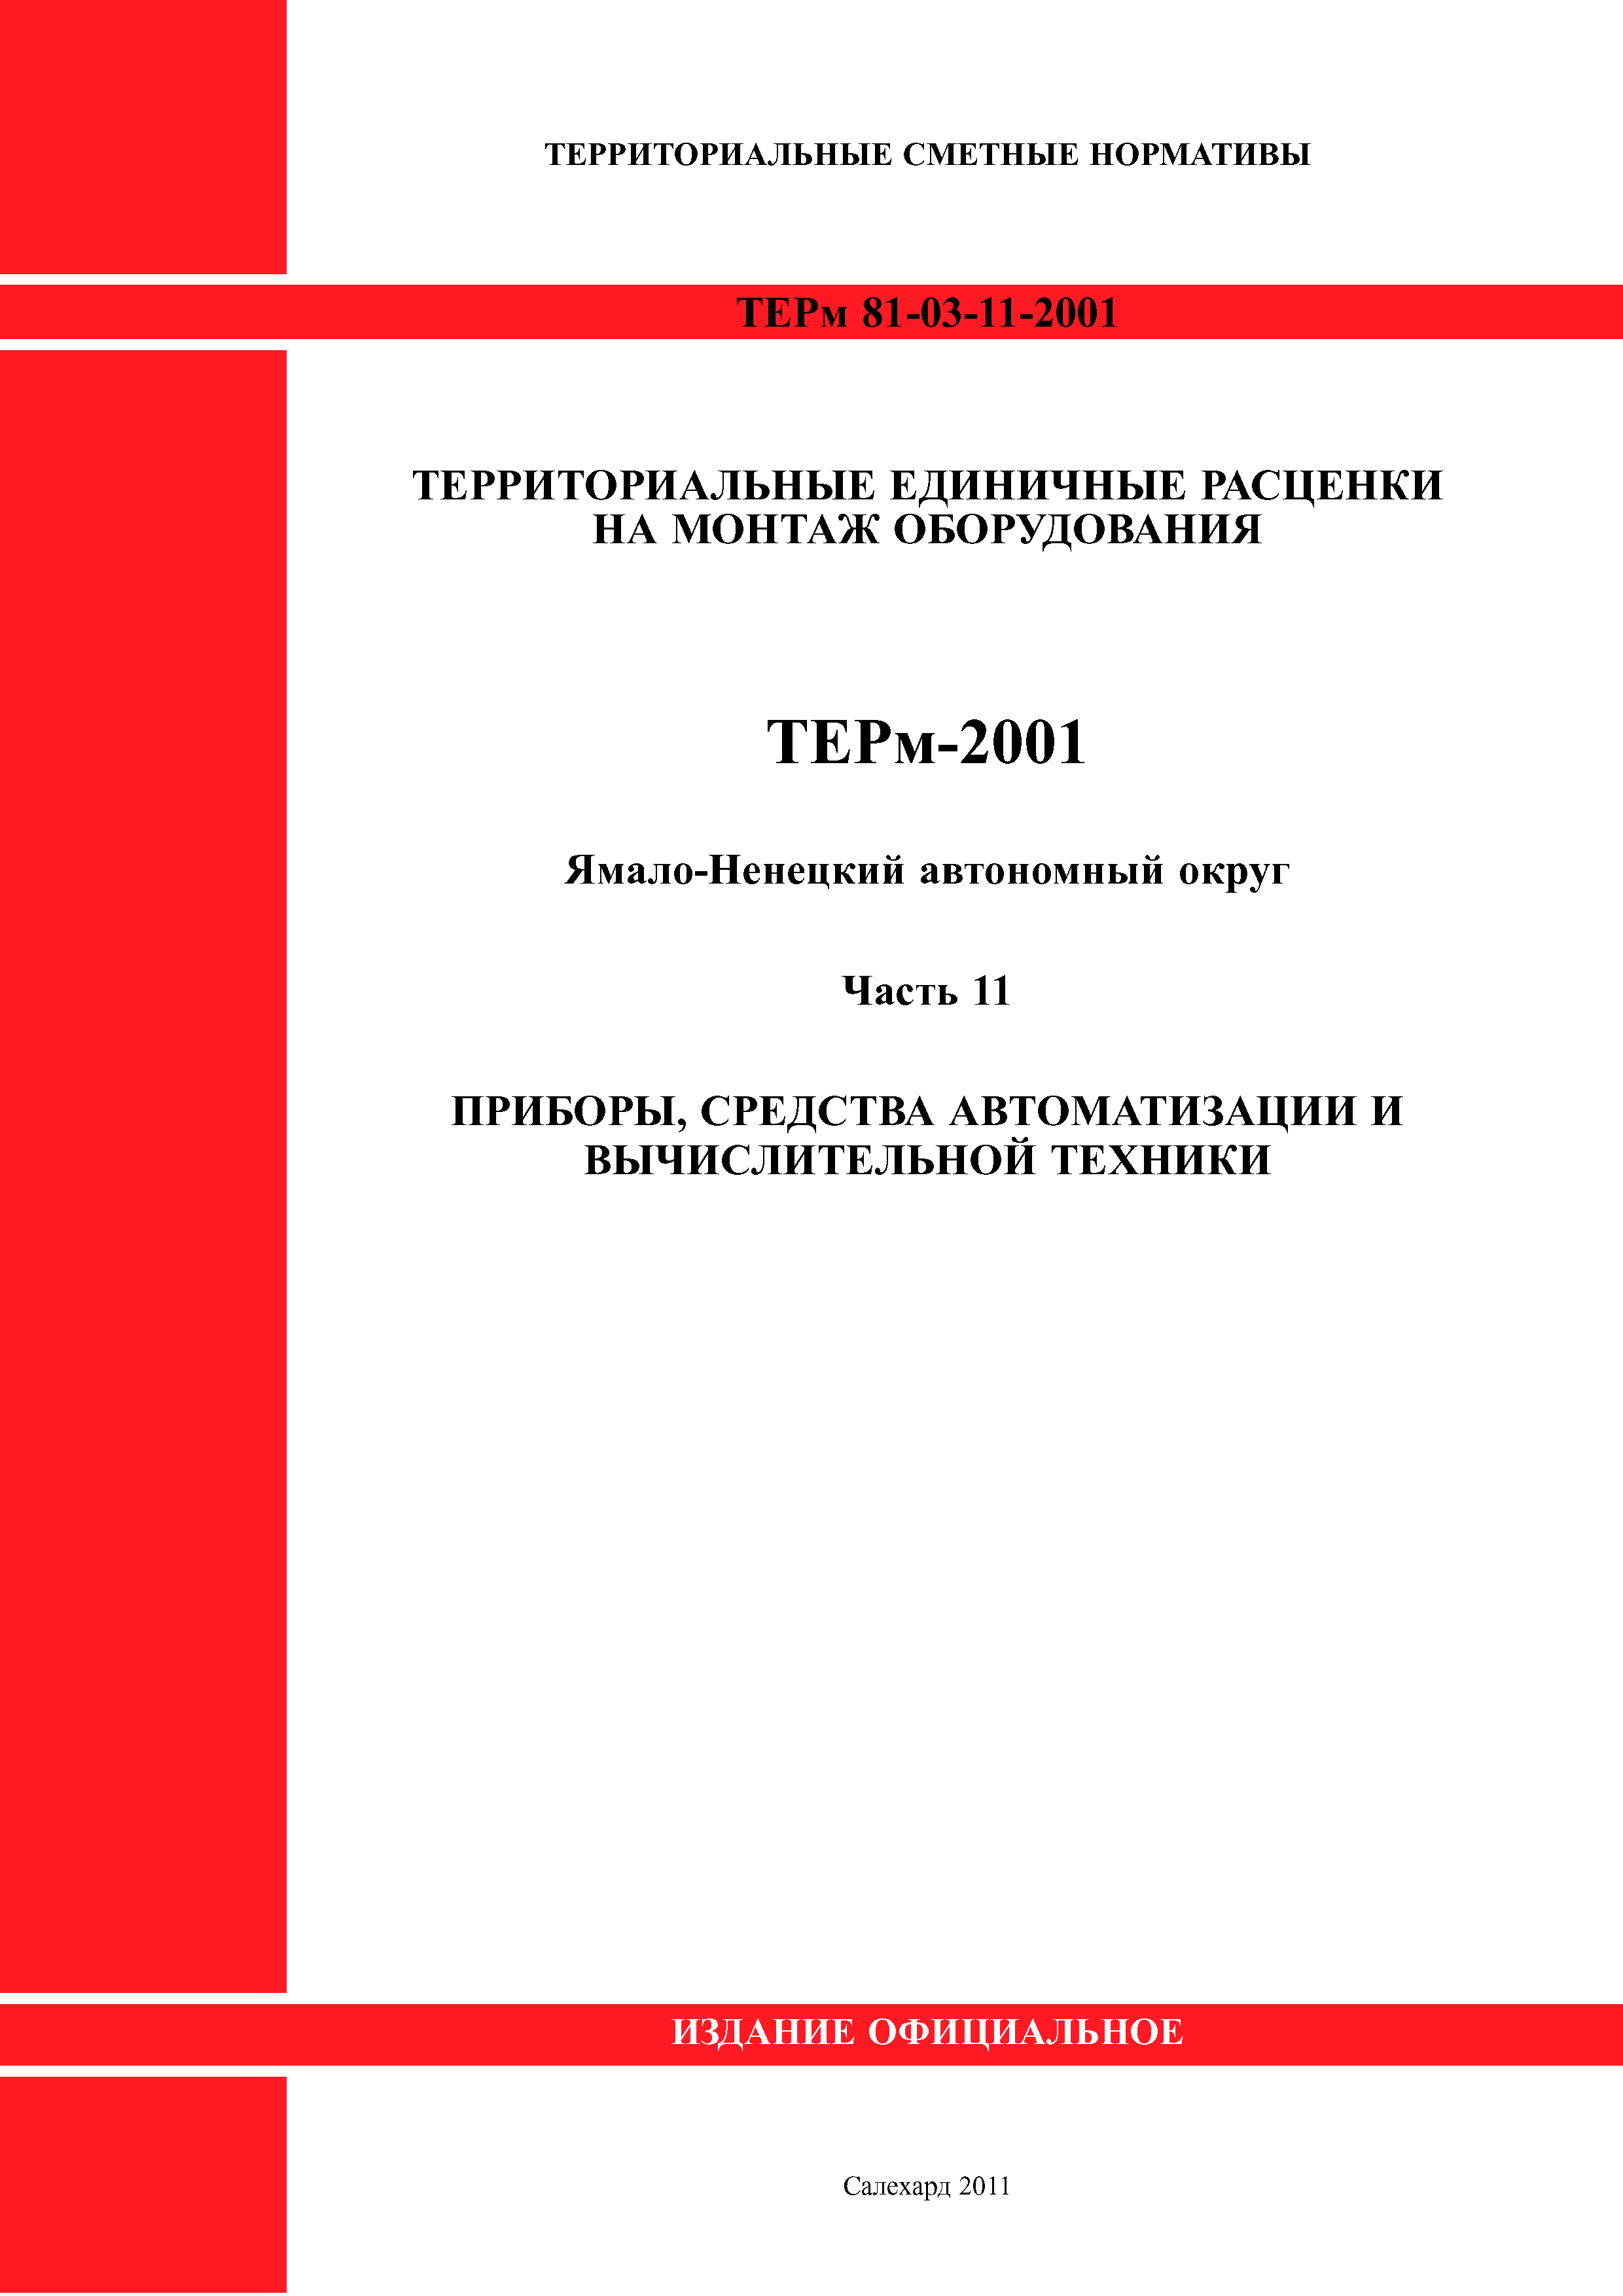 ТЕРм Ямало-Ненецкий автономный округ 11-2001